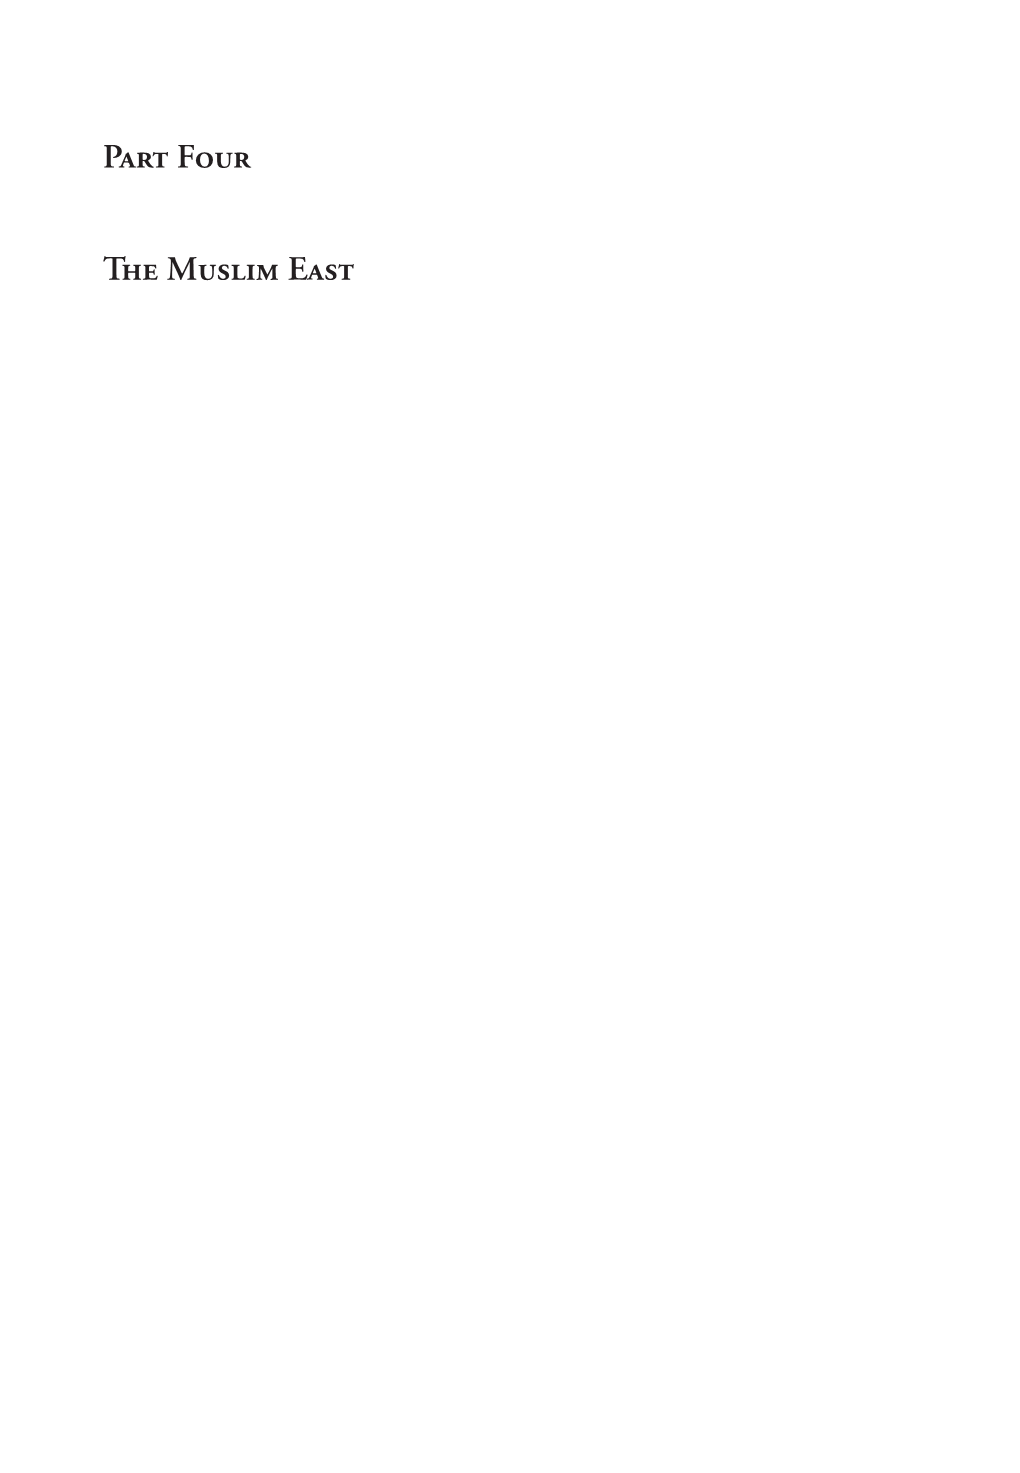 Chapter XVIII Sarvistan: a Note on Sasanian Palaces*